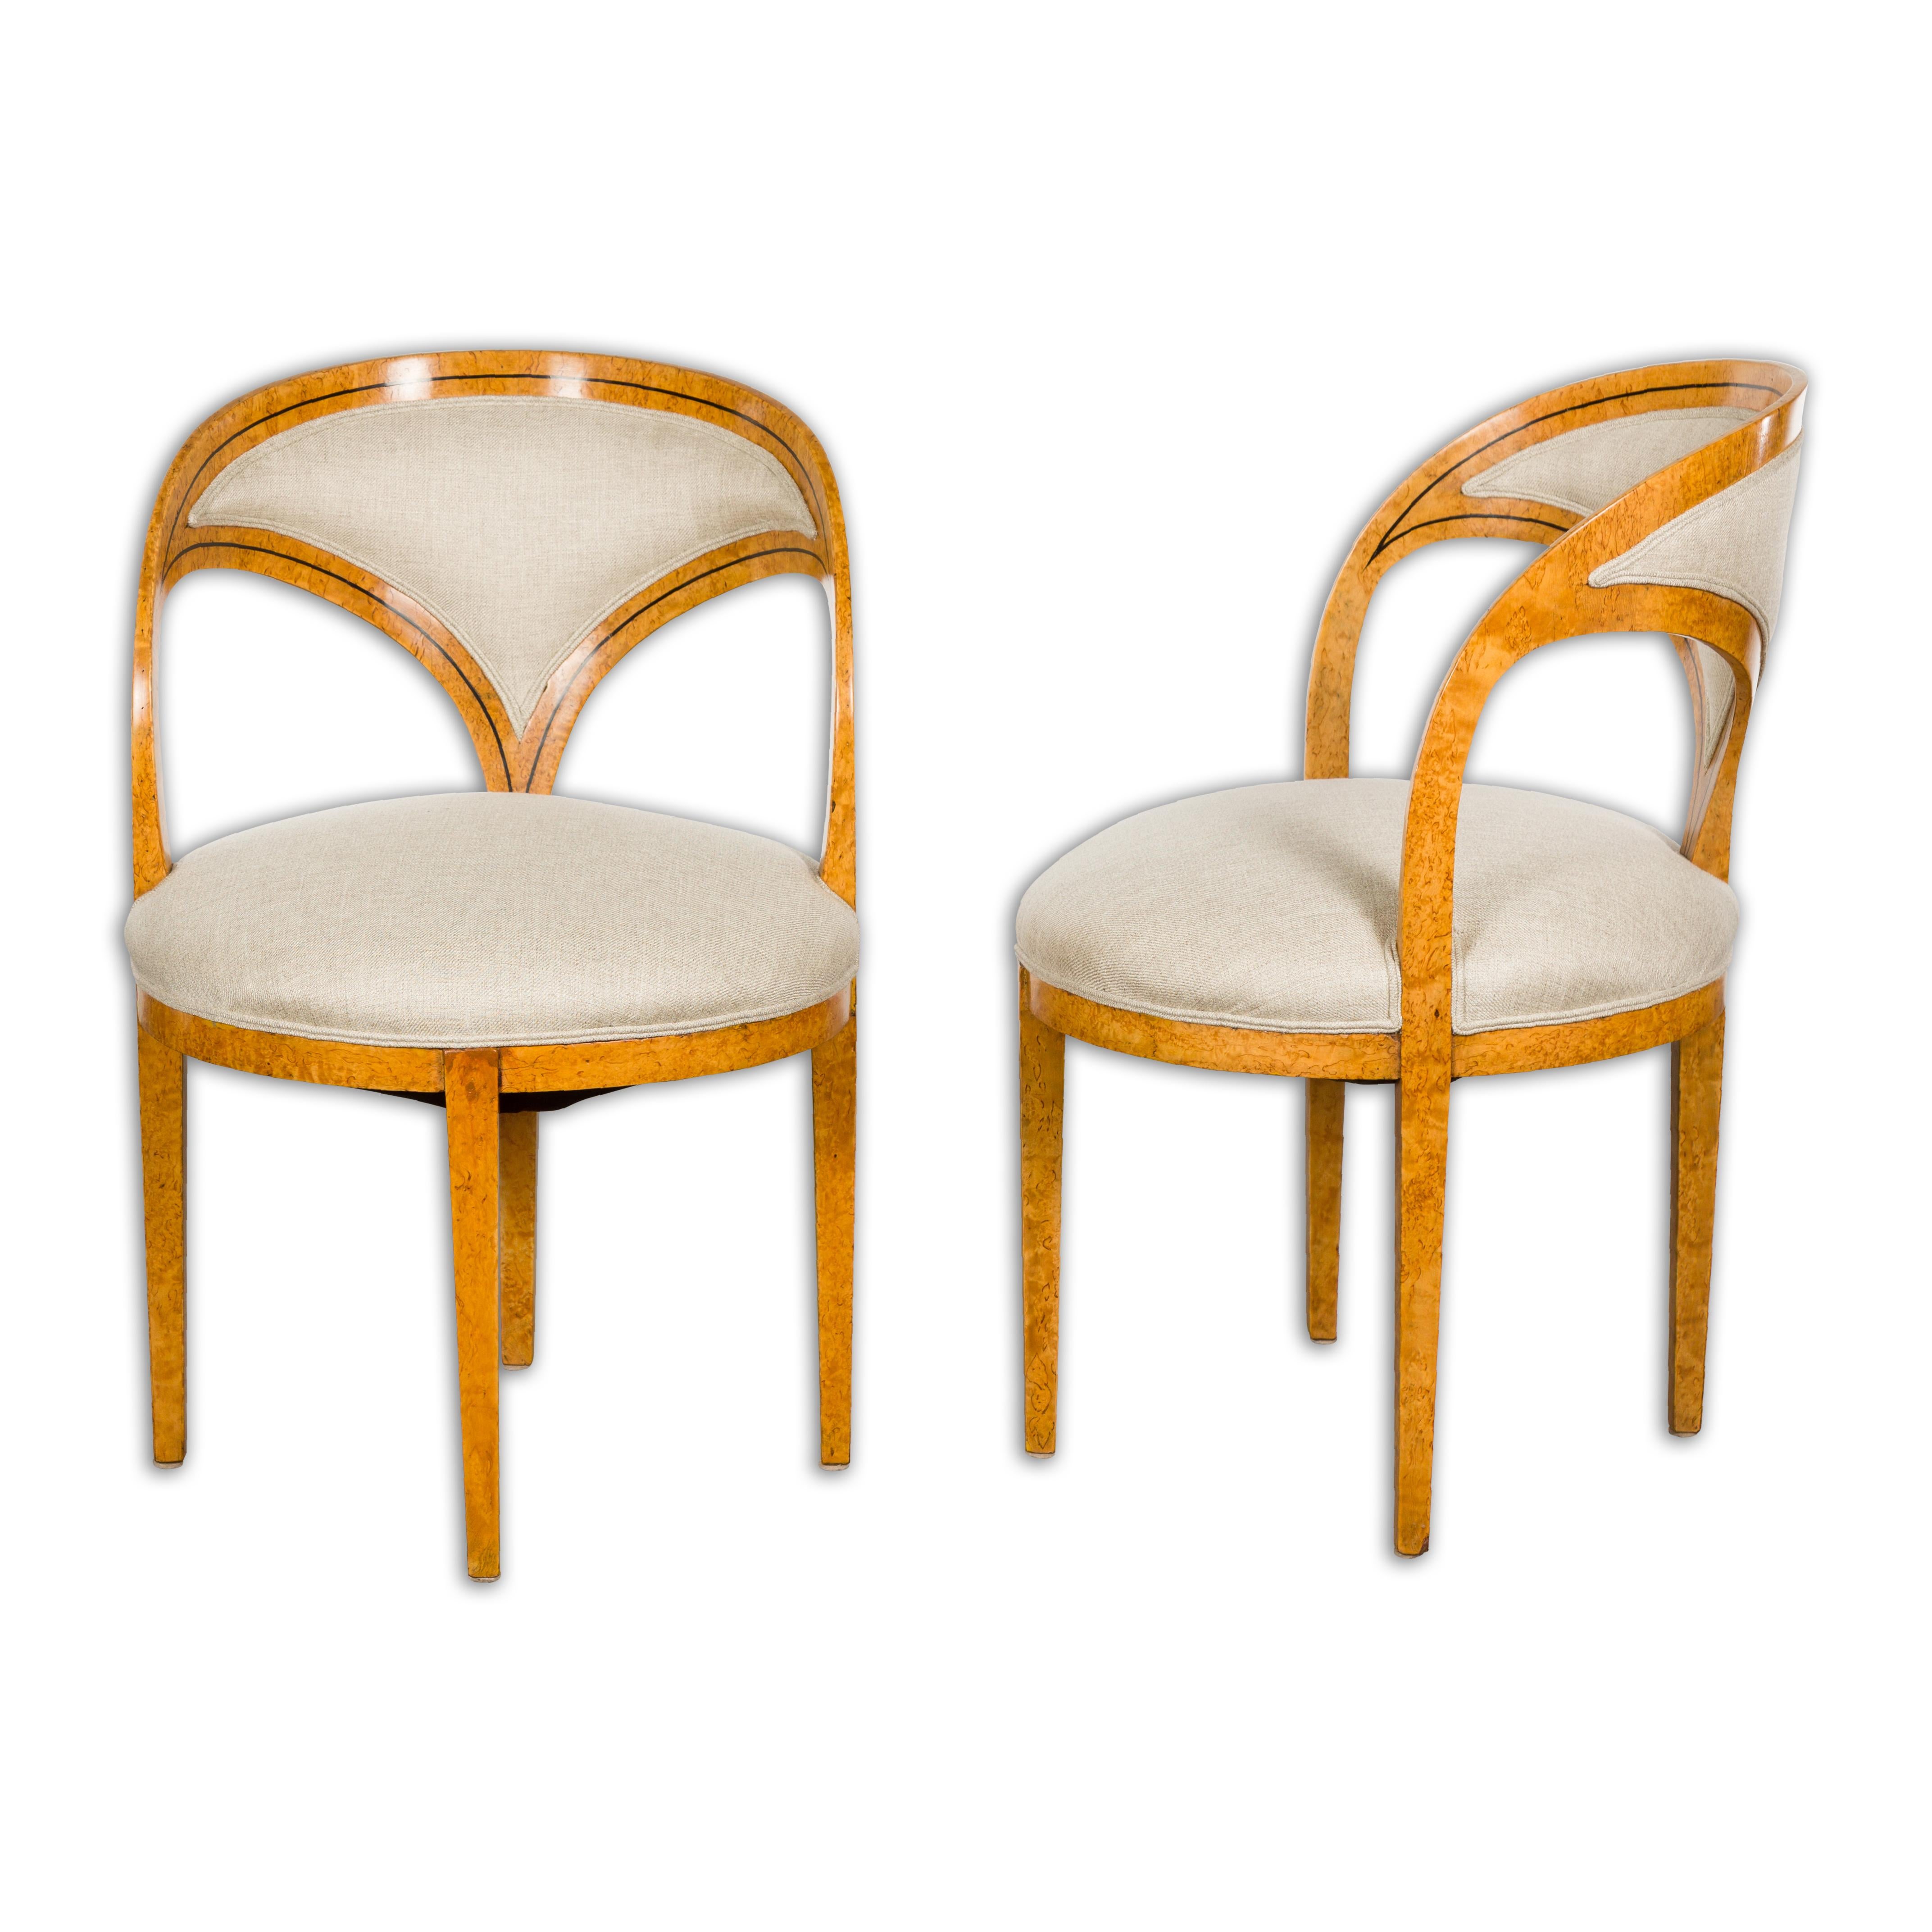 Ein Paar österreichische Biedermeier-Stühle aus dem 19. Jahrhundert mit hufeisenförmiger Rückenlehne, ebonisierten Bändern, vier sich verjüngenden Beinen und neuer Polsterung. Dieses elegante Paar österreichischer Biedermeier-Stühle aus dem 19.